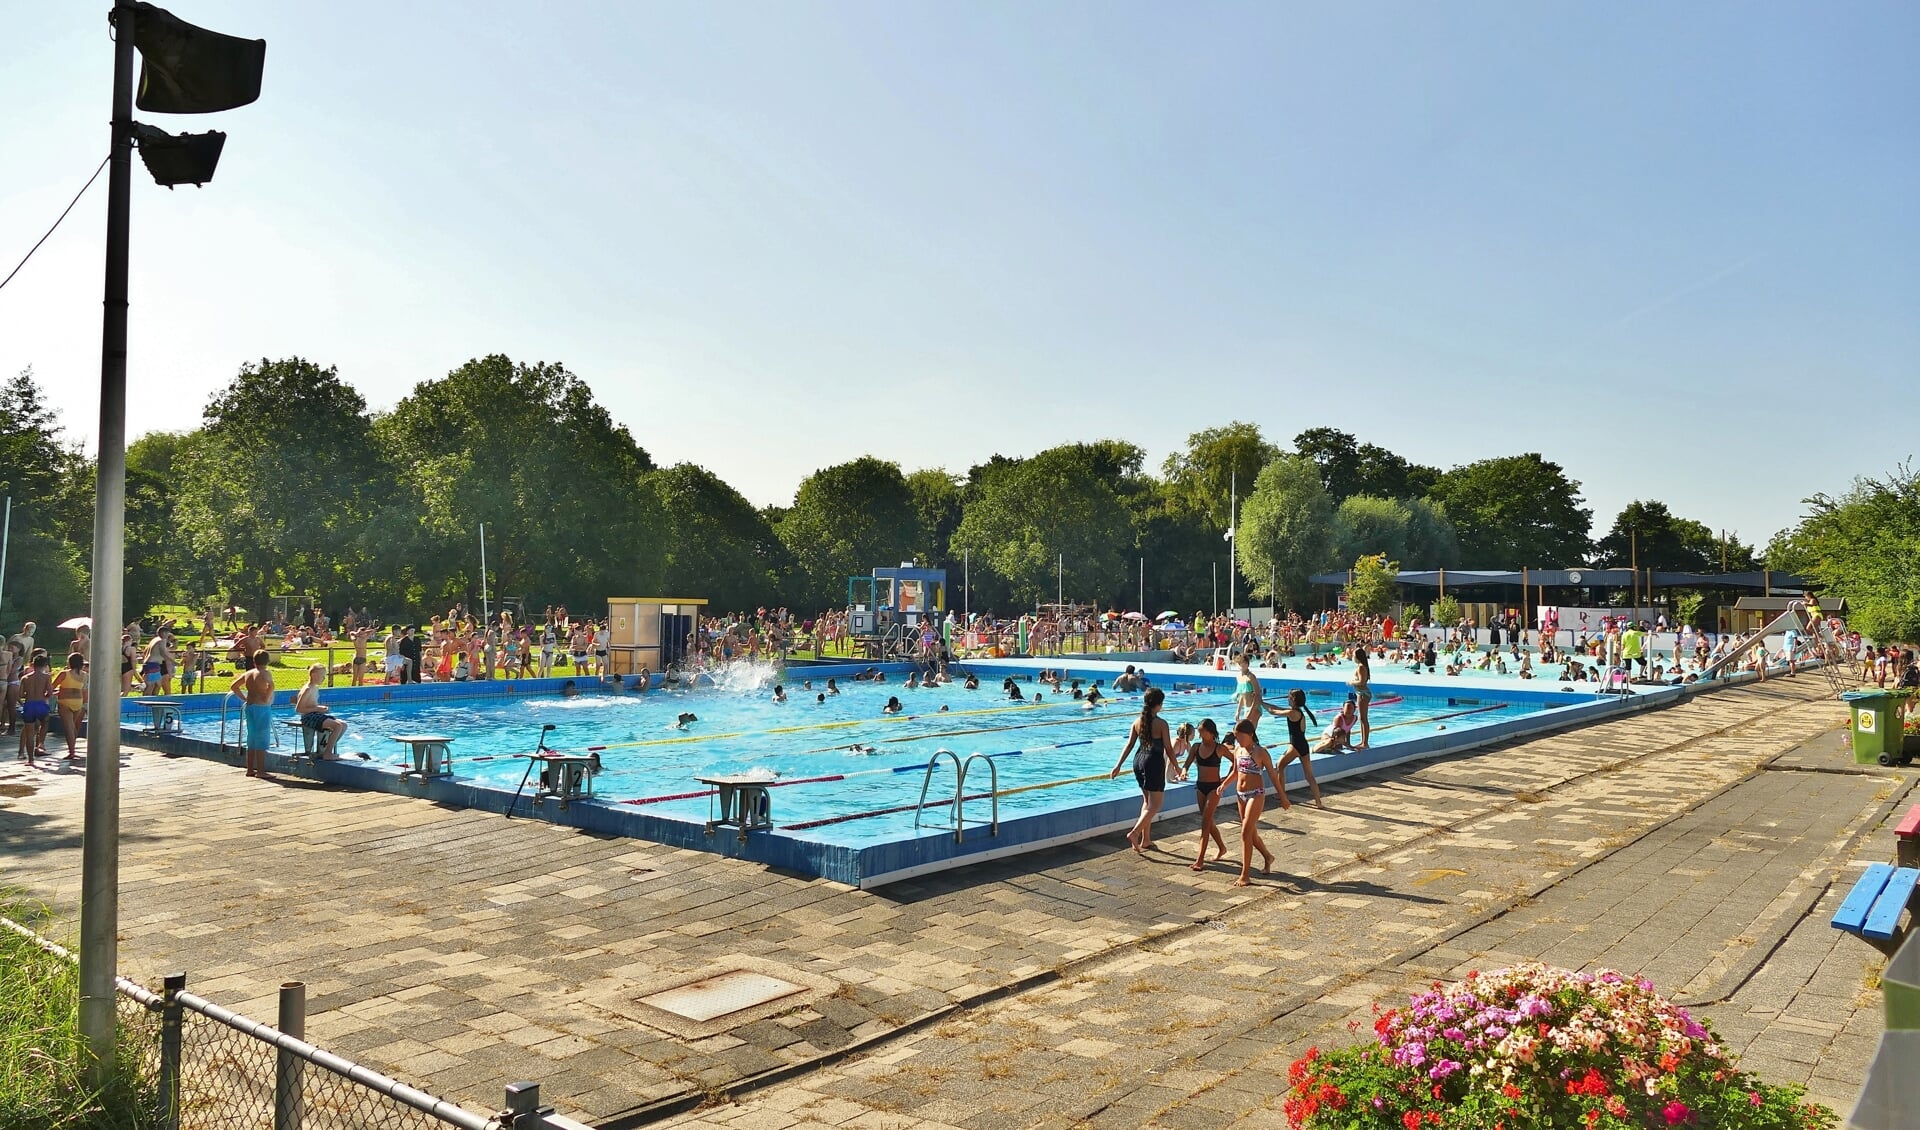 Zwembad De Waterman behoort tot de dorpsidentiteit van Wateringen, stelt het bestuur.